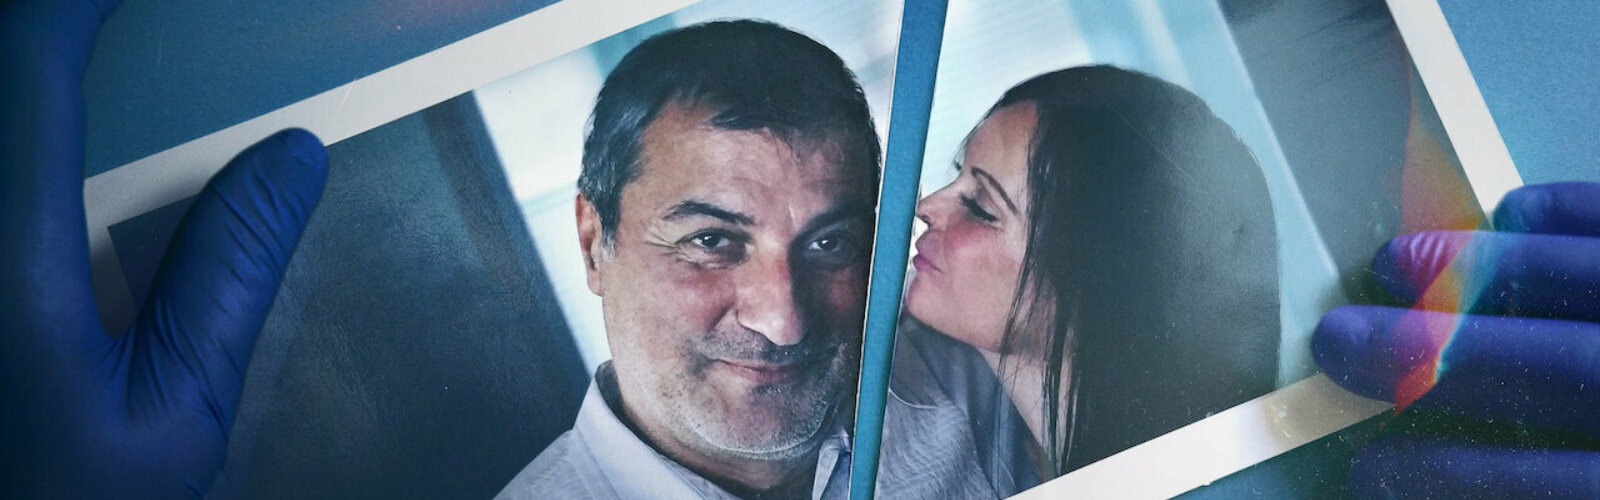 Dr. Paolo Macchiarini und seine ehemalige Verlobte in der Netflix-Doku: Bad Surgeon: Liebe unter dem Messer